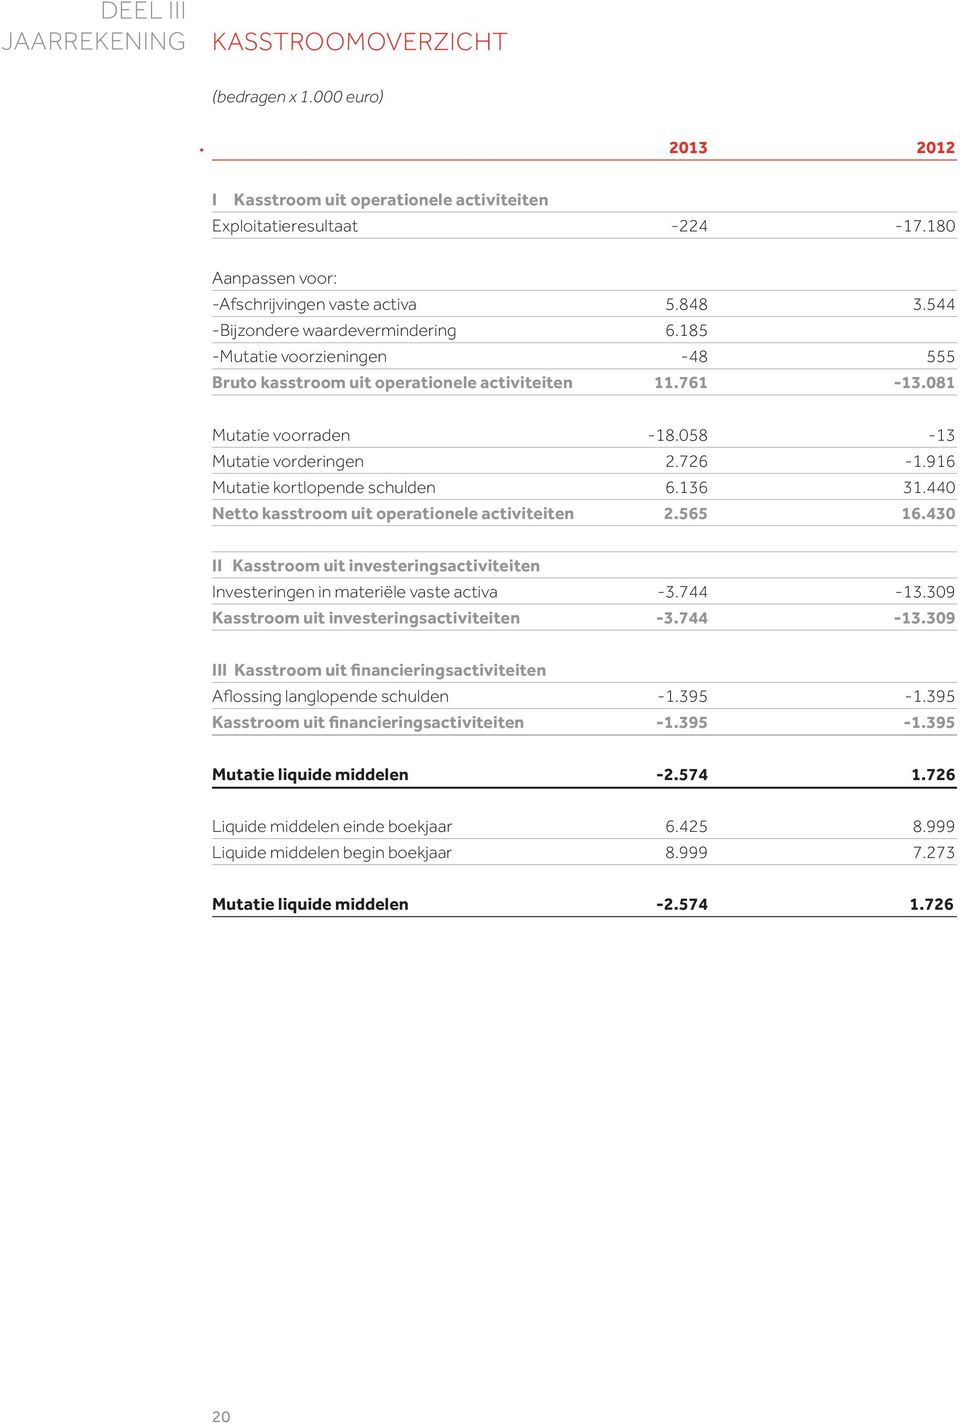 916 Mutatie kortlopende schulden 6.136 31.440 Netto kasstroom uit operationele activiteiten 2.565 16.430 II Kasstroom uit investeringsactiviteiten Investeringen in materiële vaste activa -3.744-13.